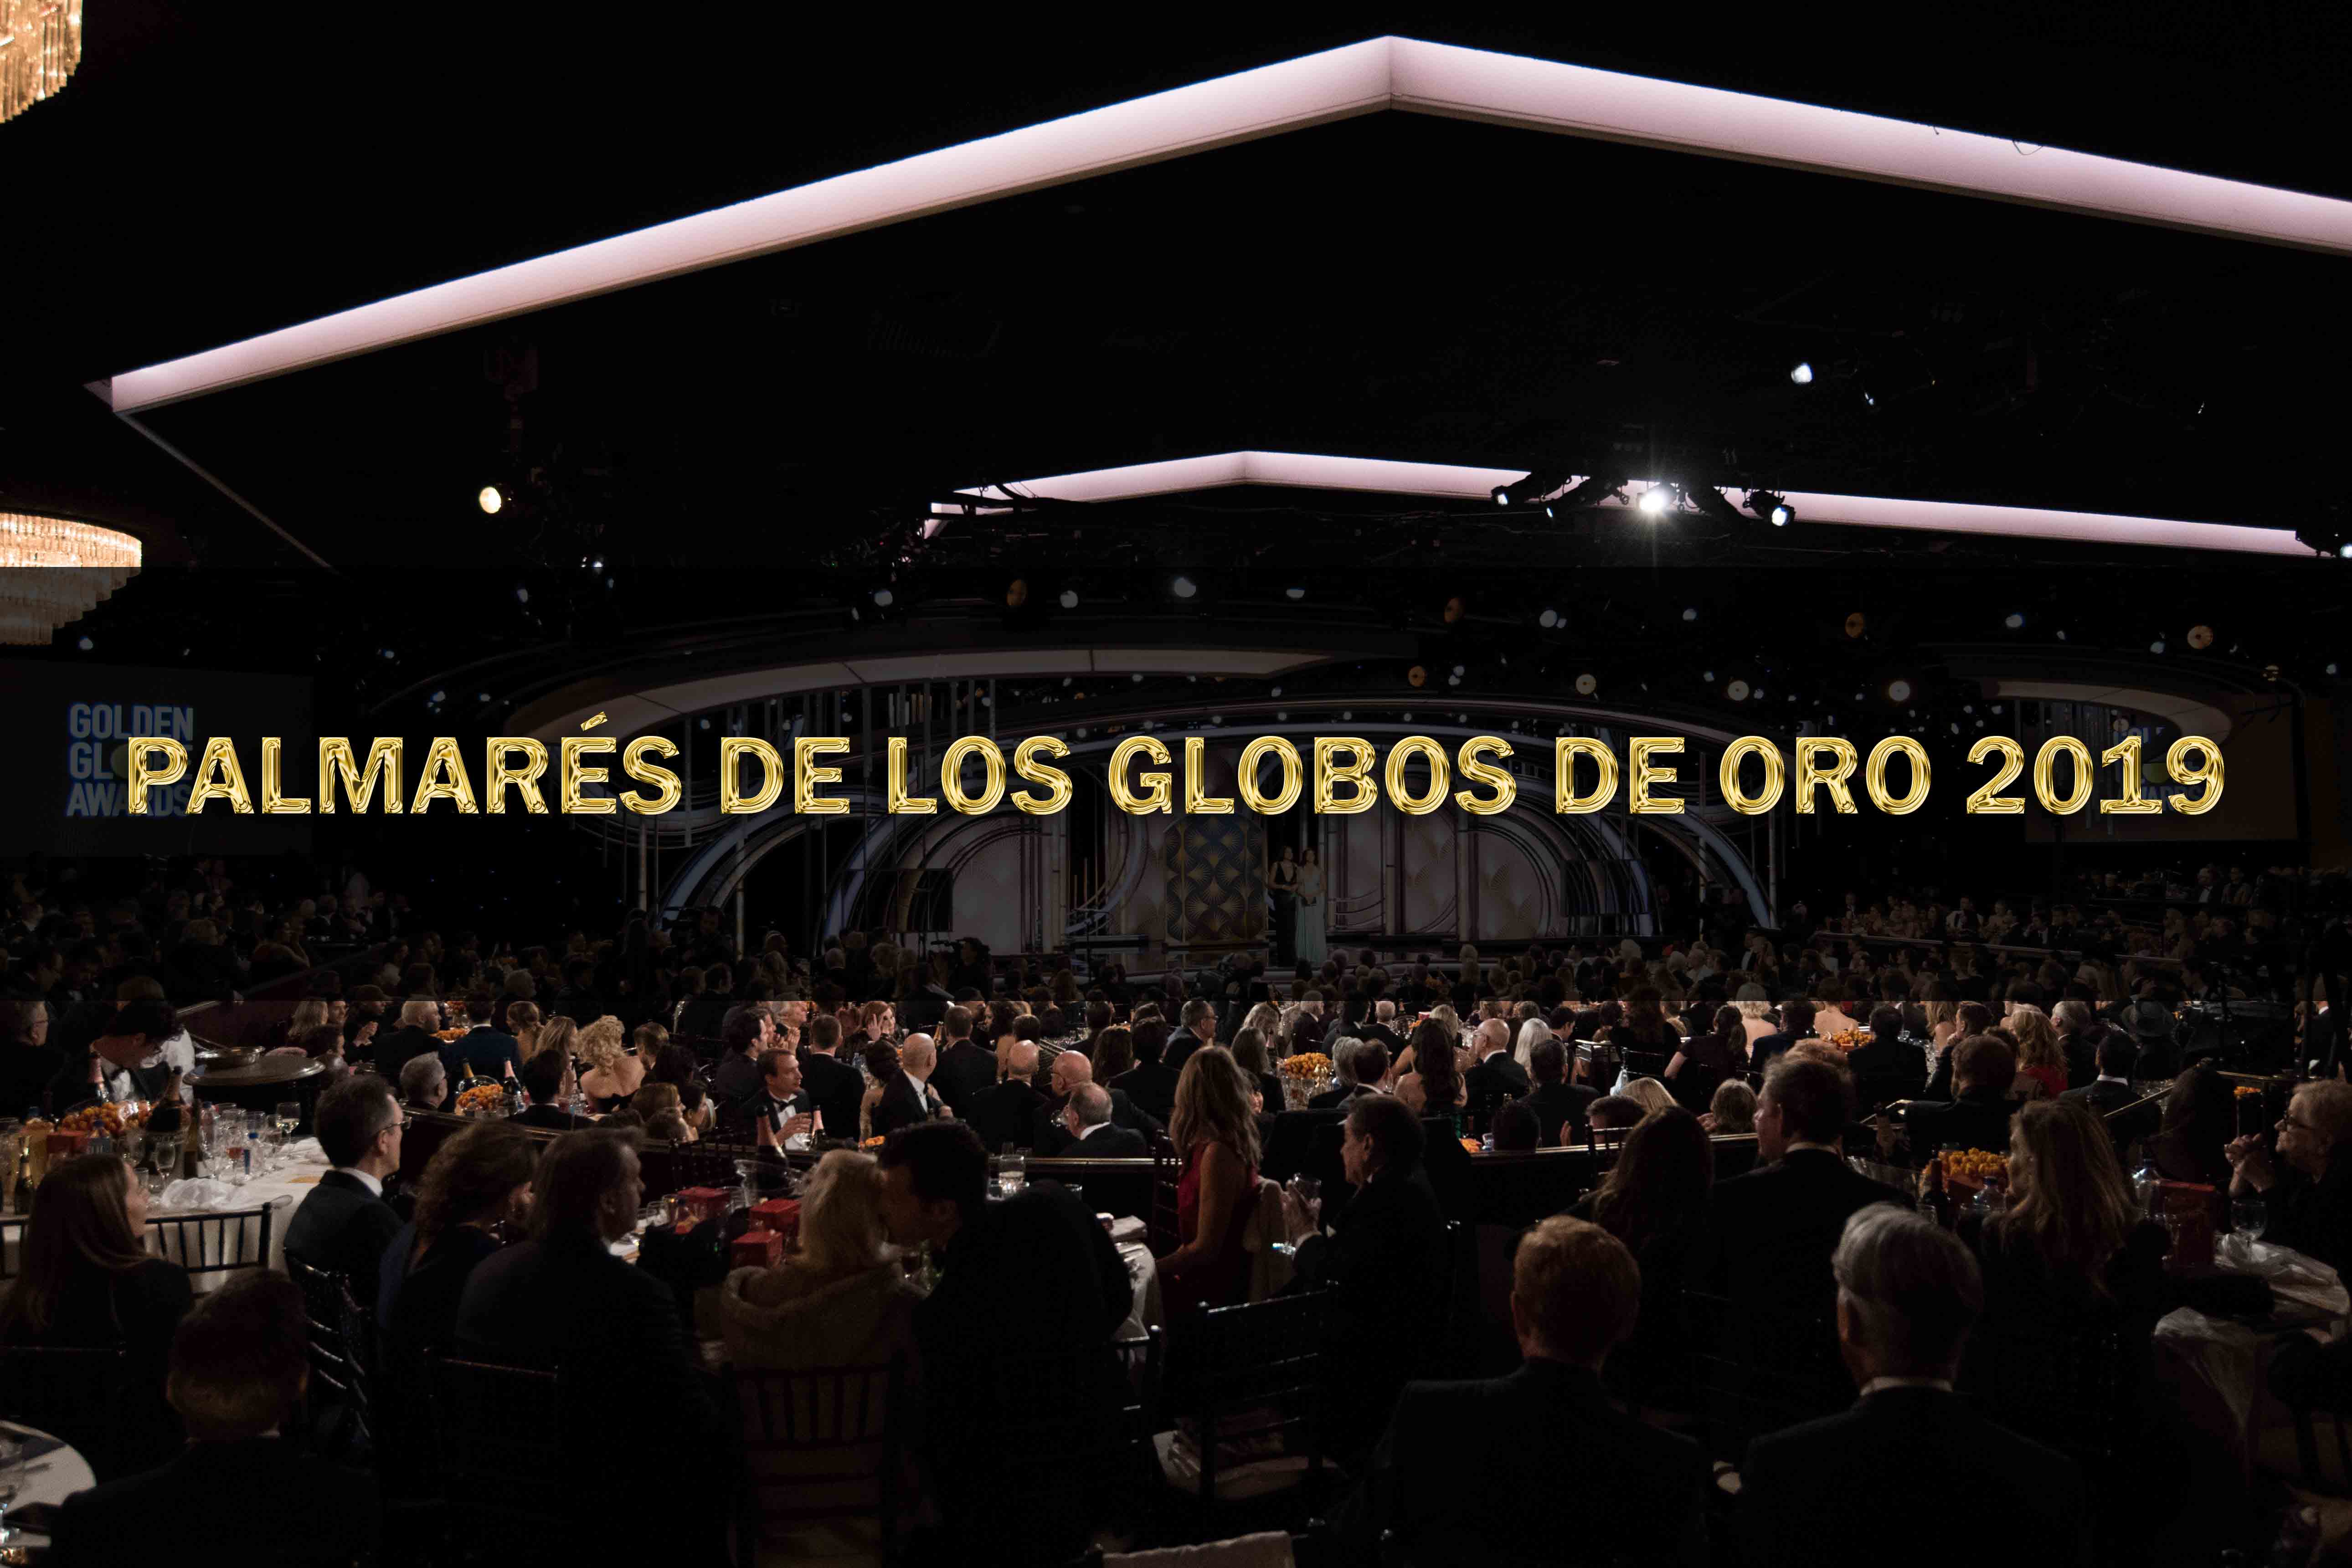 Palmarés de los Globos de Oro 2019